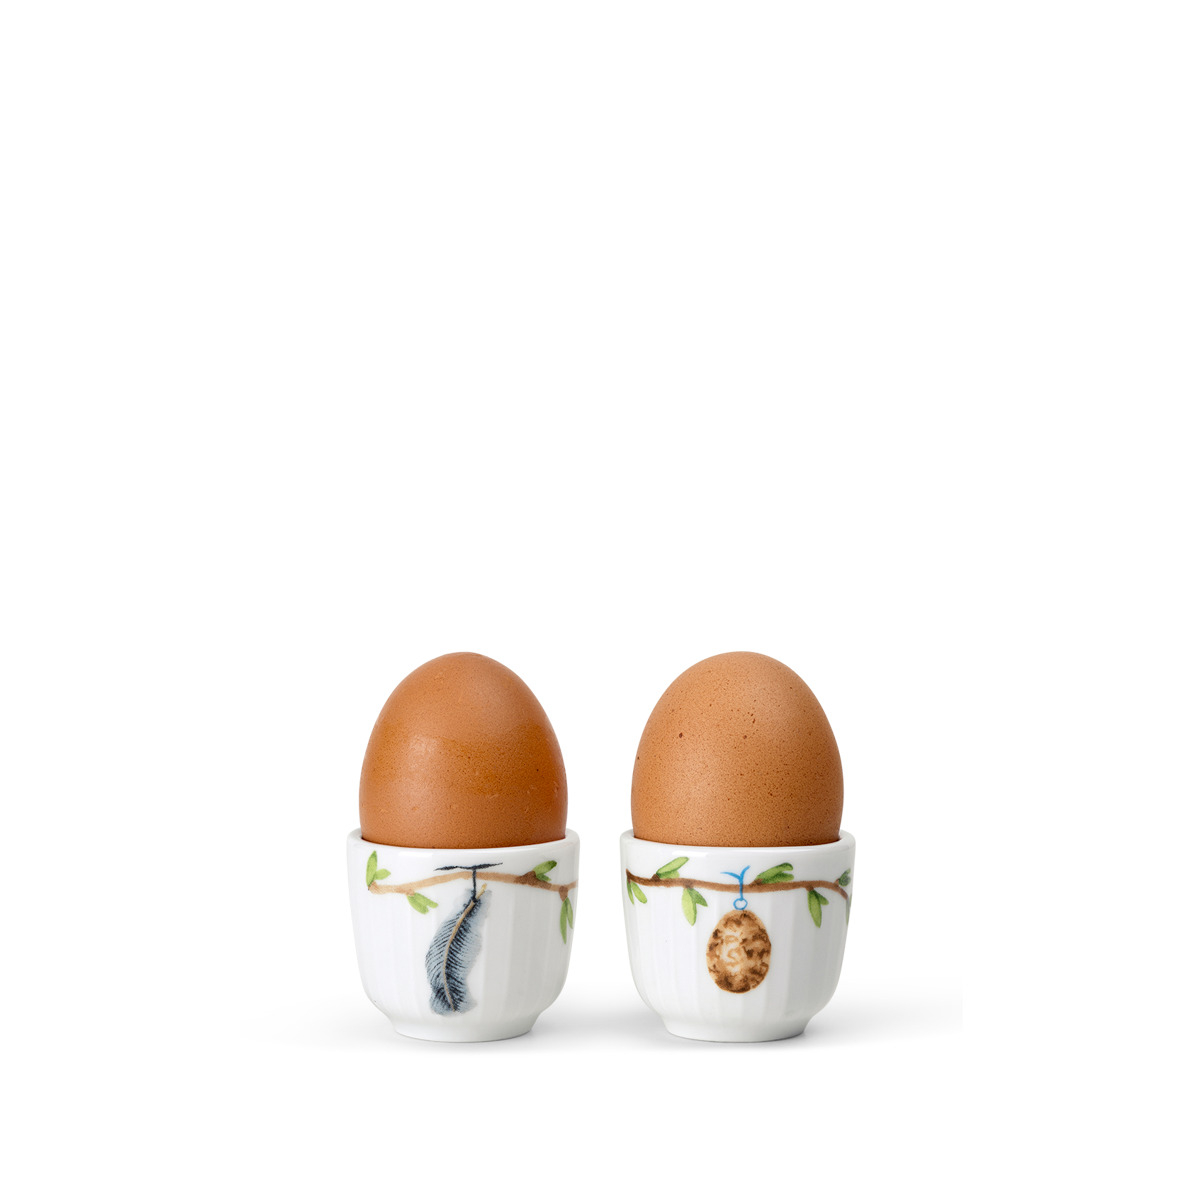 Se Kähler Hammershøj Easter æggebægre, 2 stk. - 2021 hos Rikki Tikki Shop